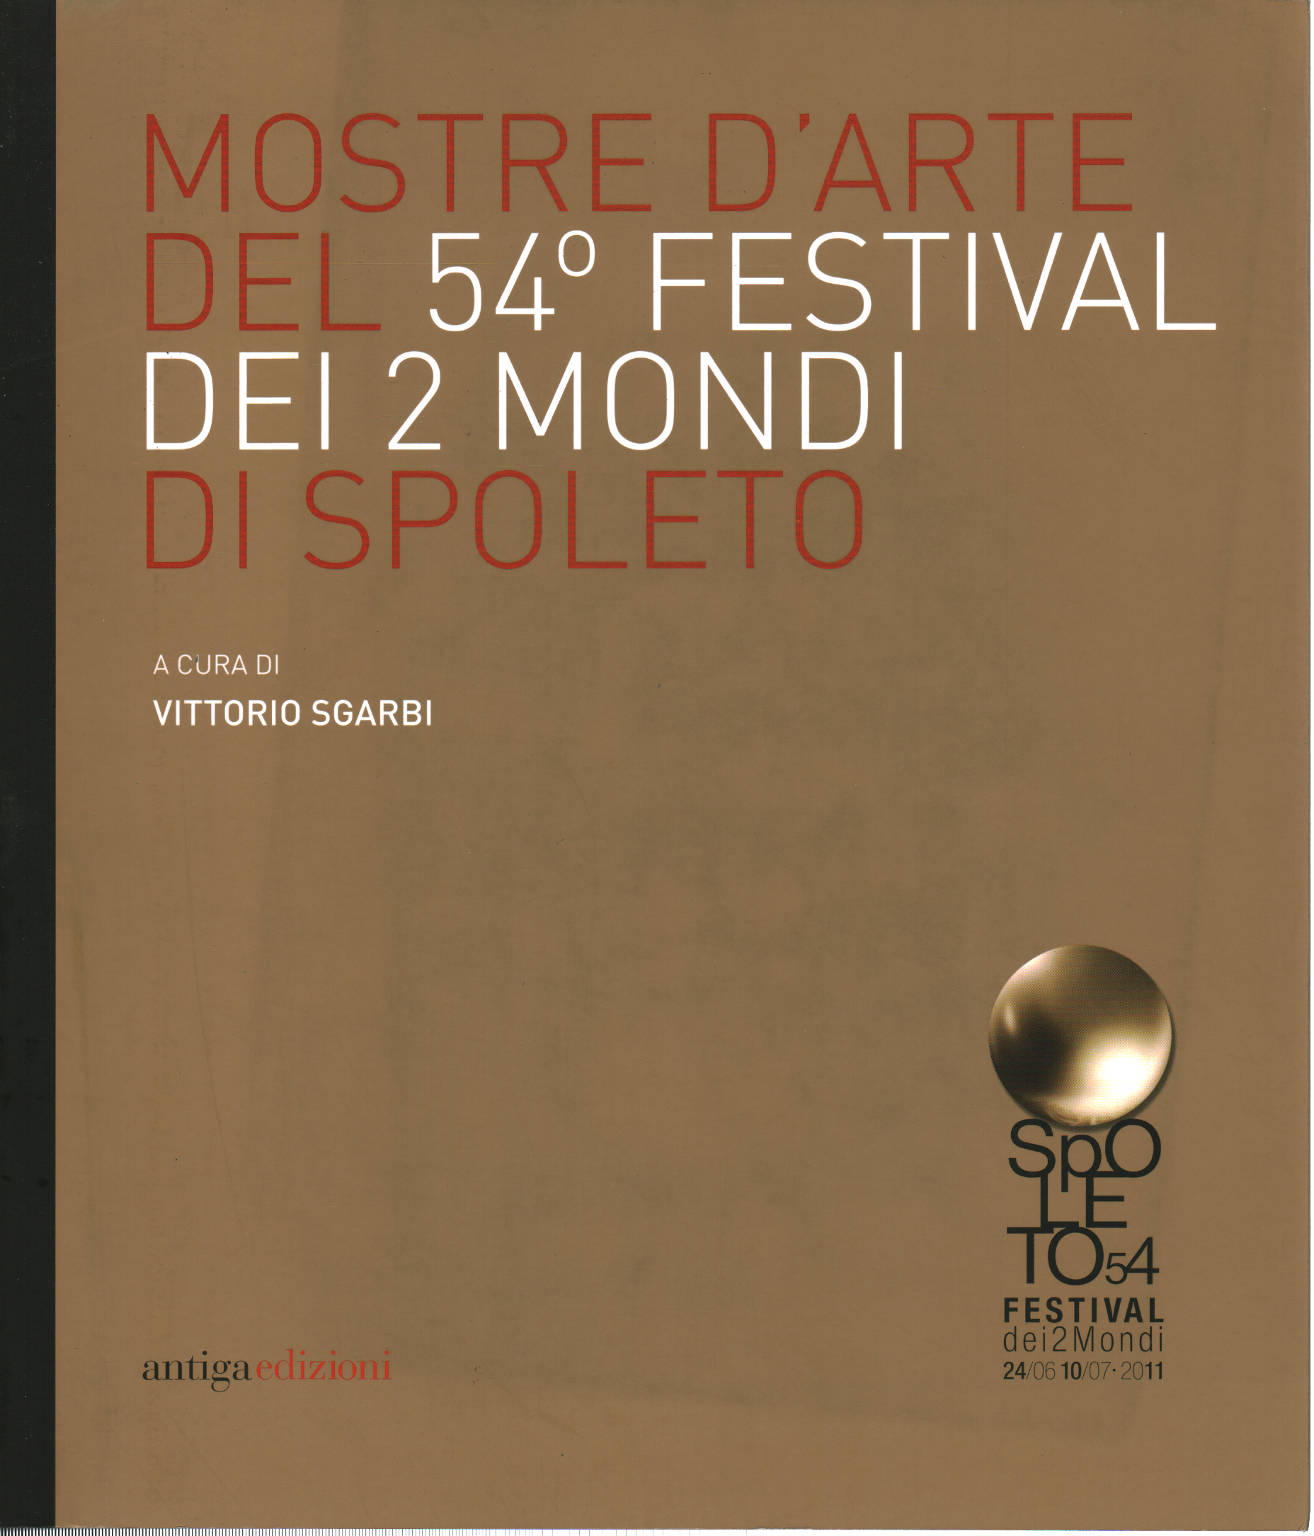 Mostre d'arte del 54º Festival dei 2 mondi di Spo, Vittorio Sgarbi